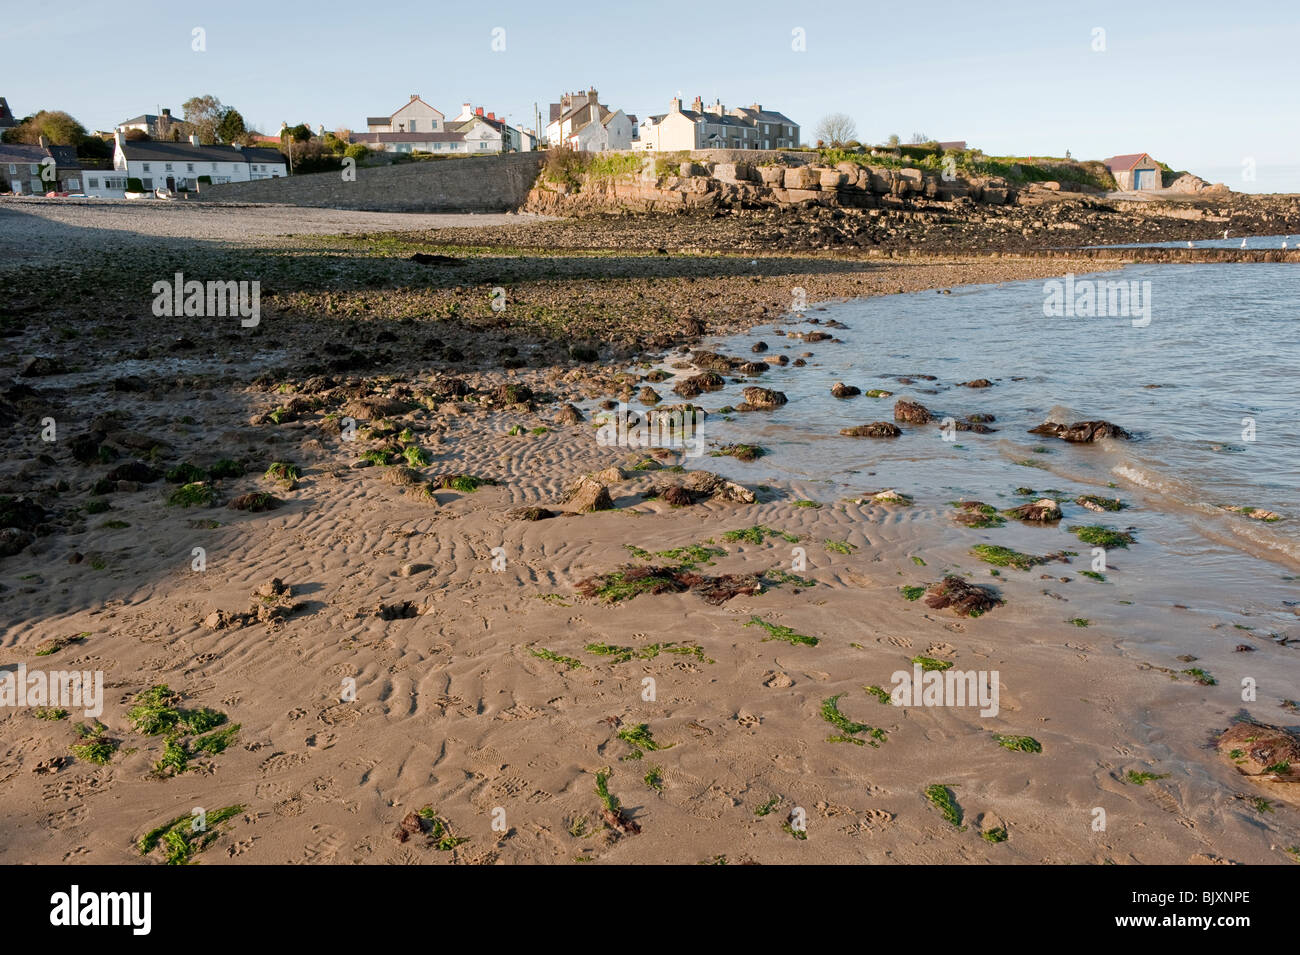 La plage de la baie de llangefni Anglesey au nord du Pays de Galles UK Banque D'Images